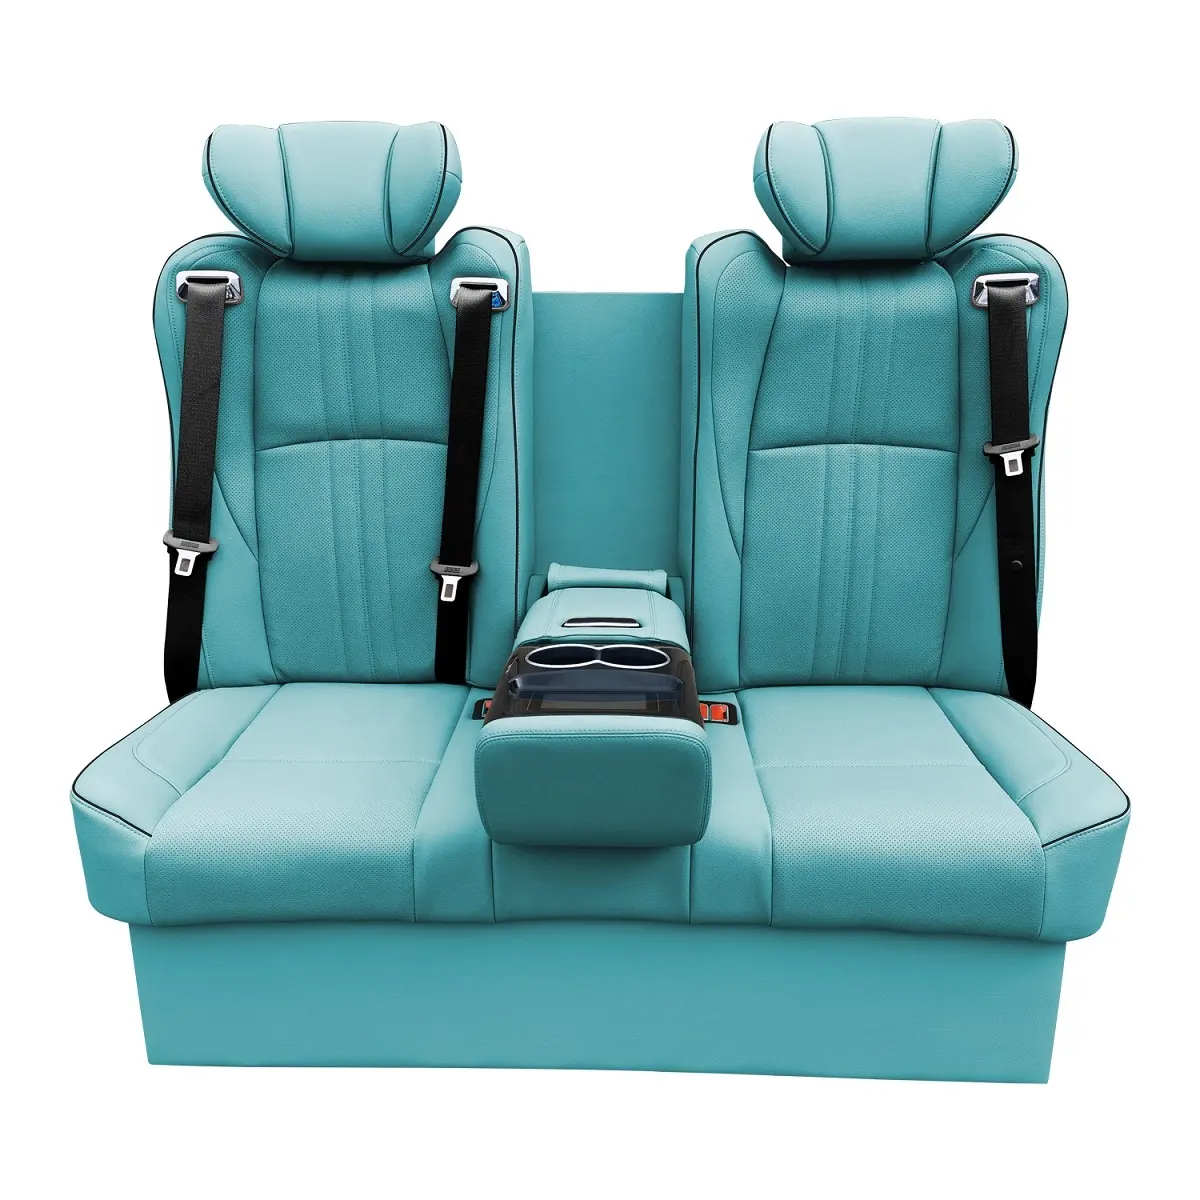 Vip lüks yeni araba moda iki koltuk elektrikli deri koltuklar için satılık dönüşüm Conversion Vellfire